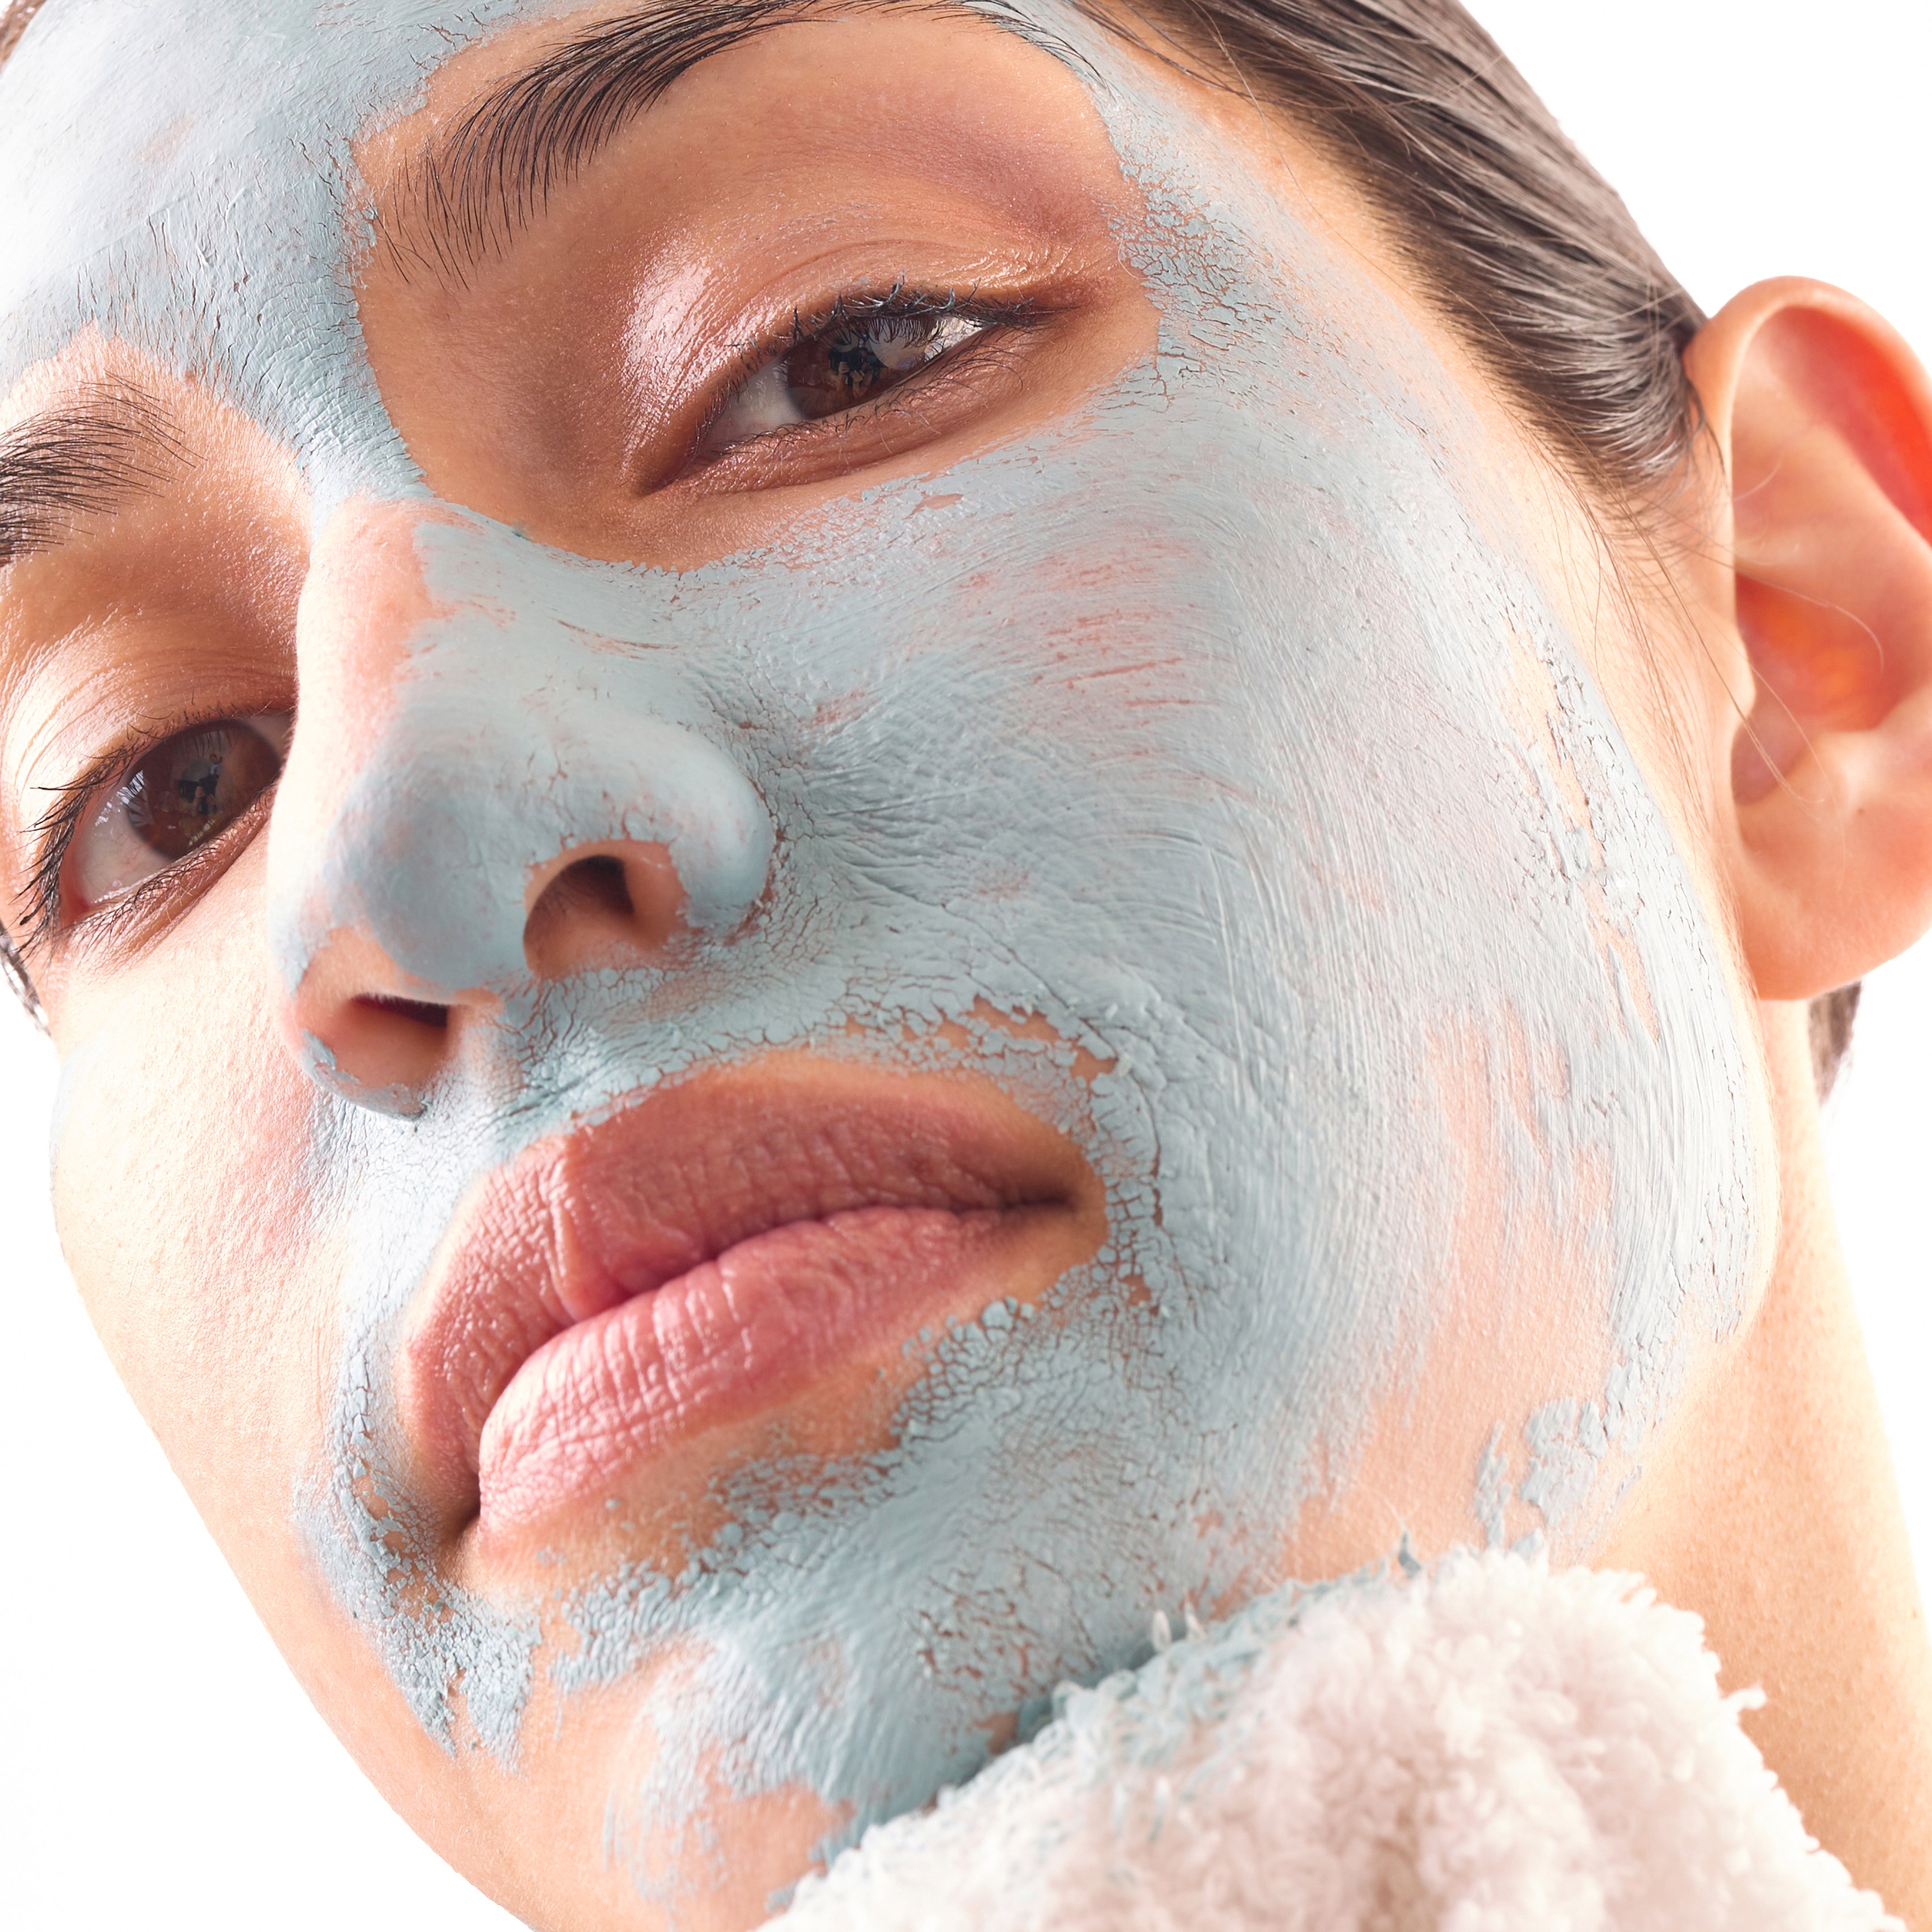 La maschera detergente da 2 minuti che i professionisti del viso utilizzano ogni mattina